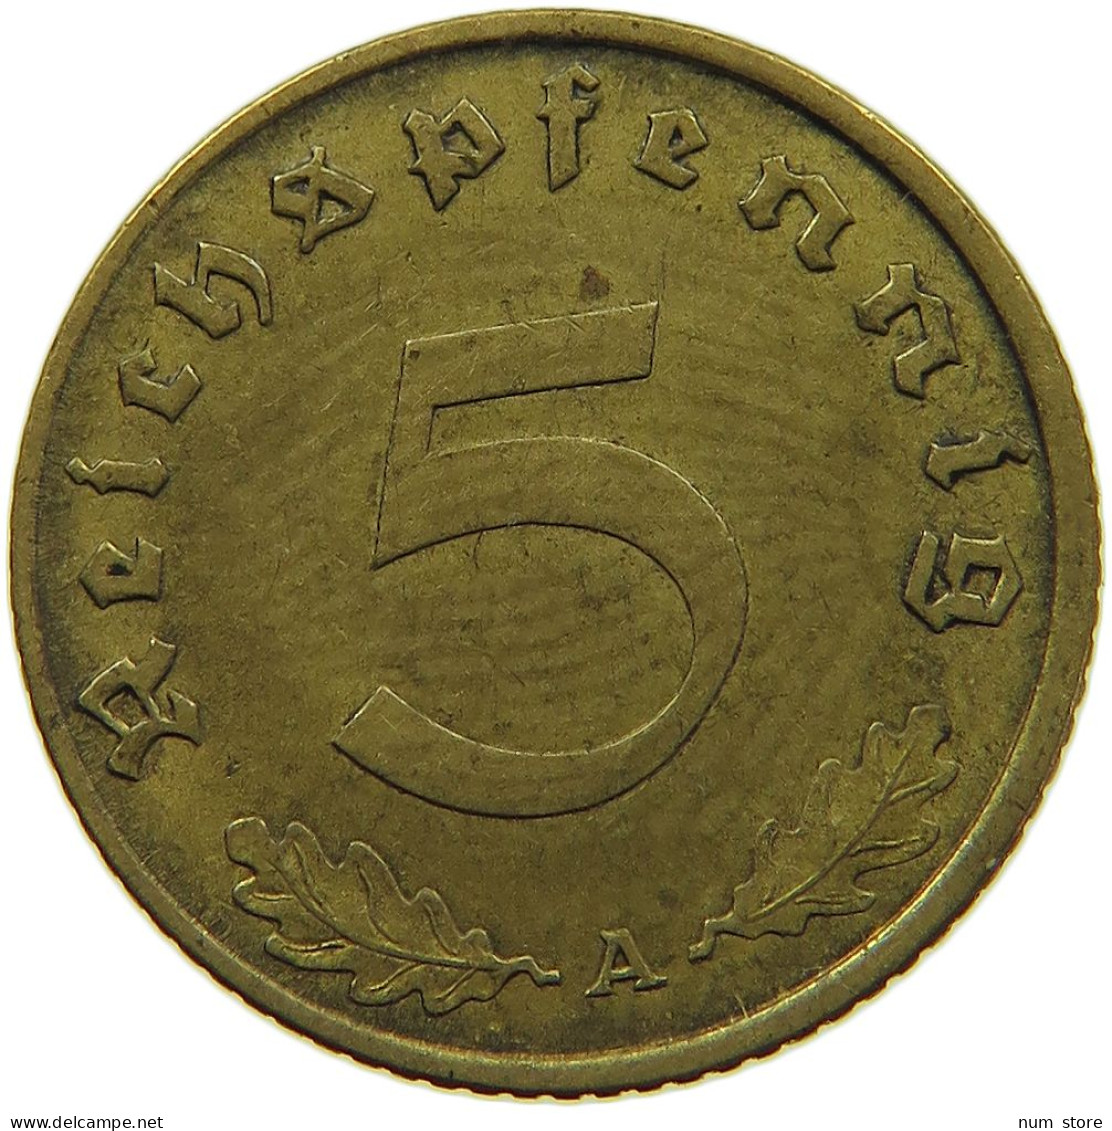 GERMANY 5 REICHSPFENNIG 1938 A #s091 0669 - 5 Reichspfennig